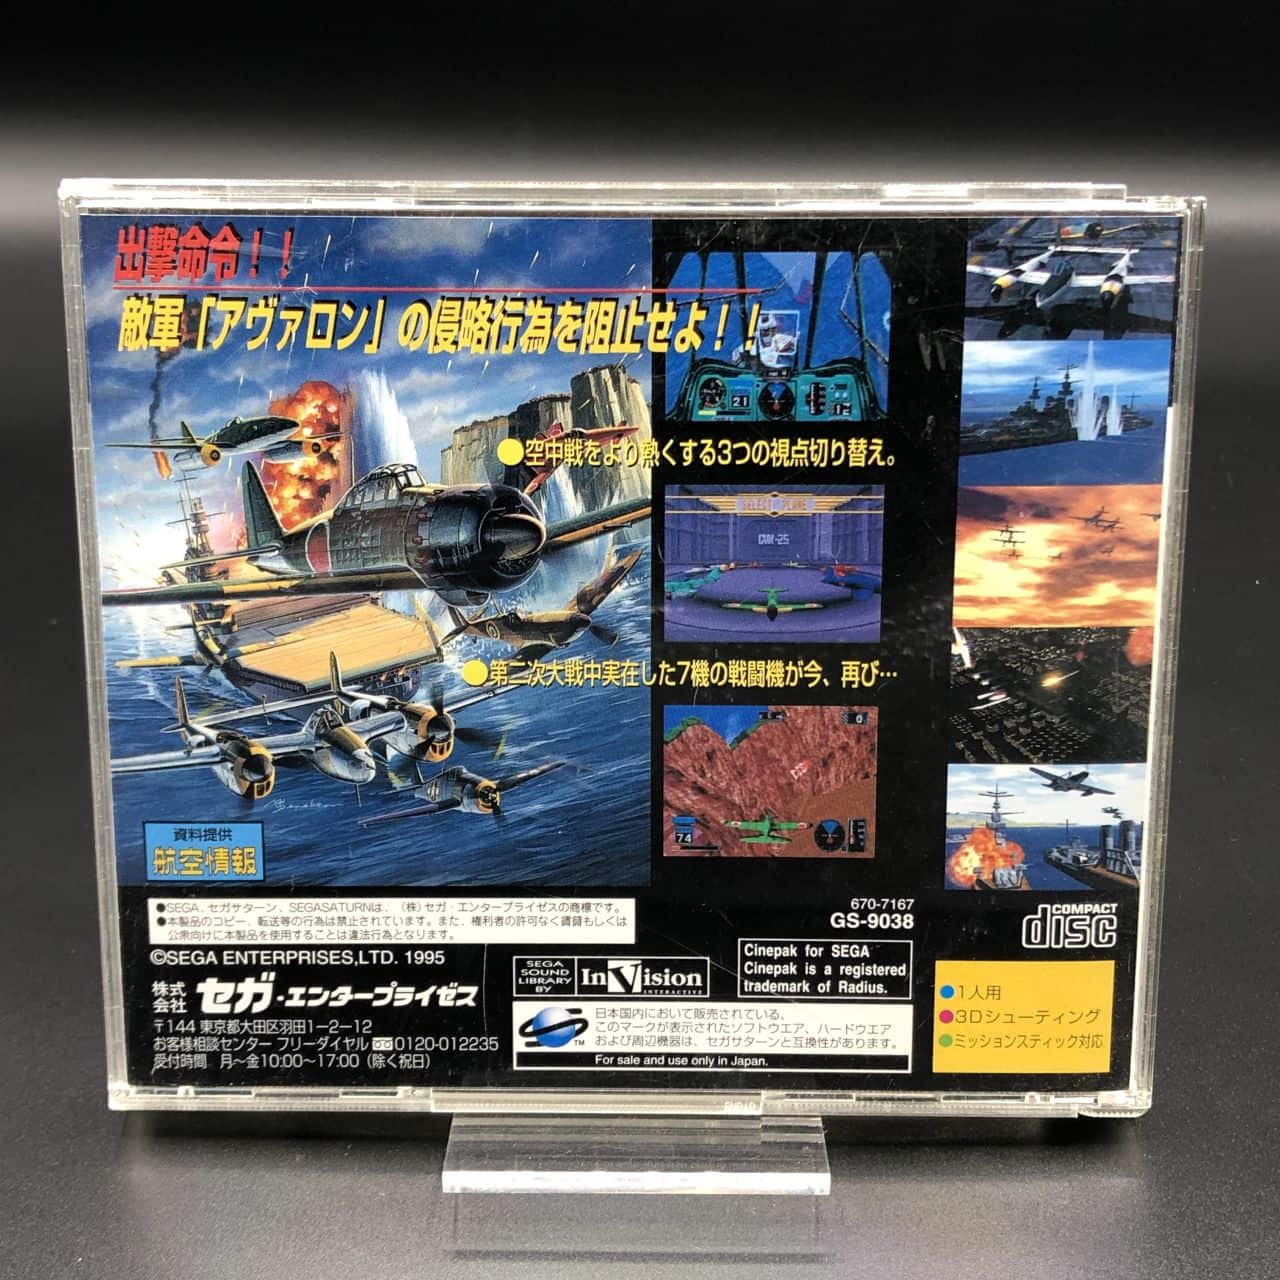 Wing Arms (Import Japan) (Komplett) (Sehr gut) Sega Saturn